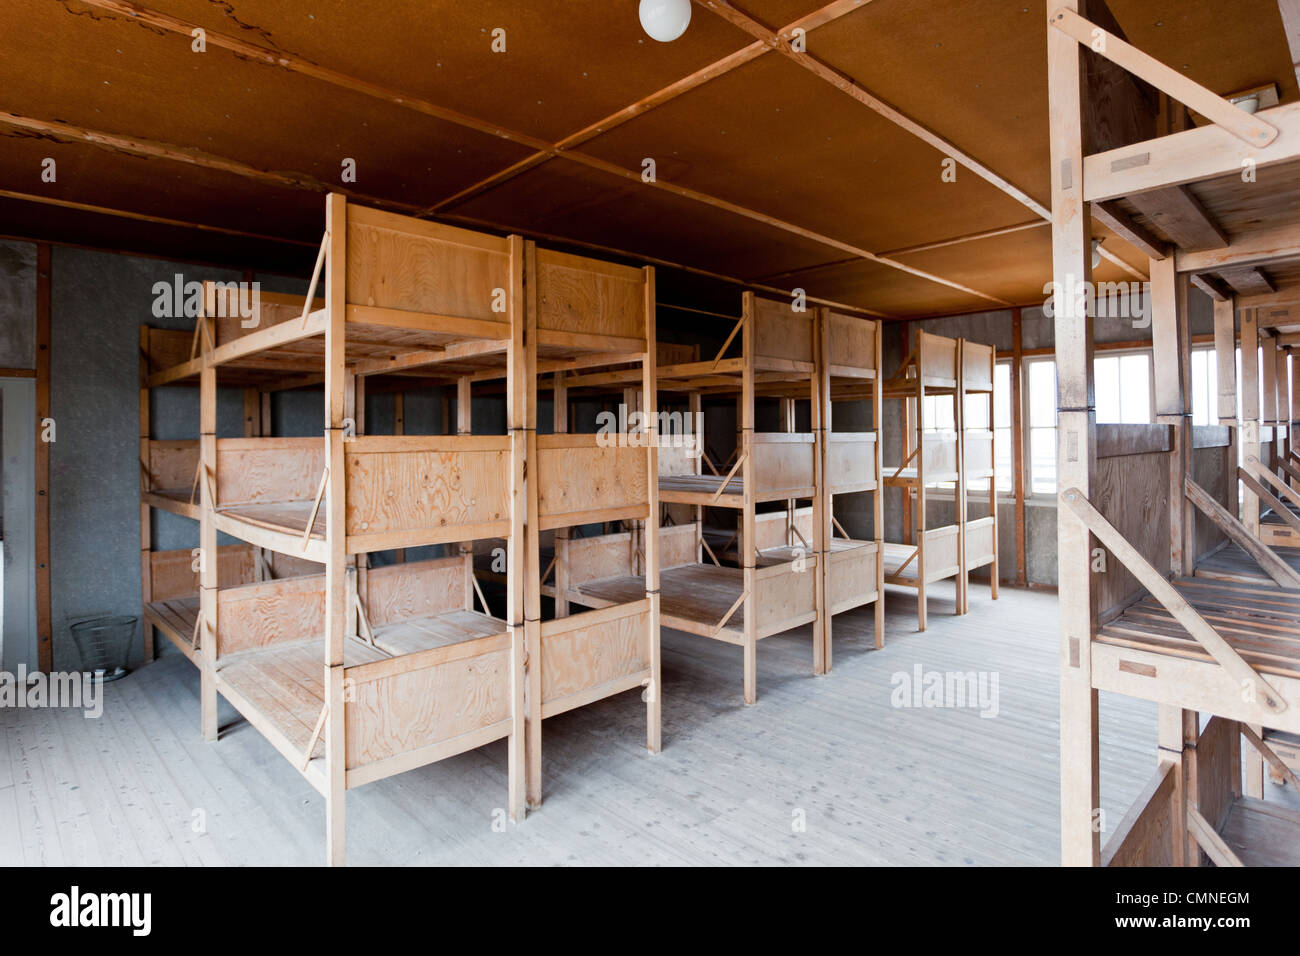 Wohnheim Bereich im KZ Dachau, Deutschland. Dreifache Höhe hölzernen Kojen für die Gefangenen in den Schlafsaal Kasernen. Stockfoto